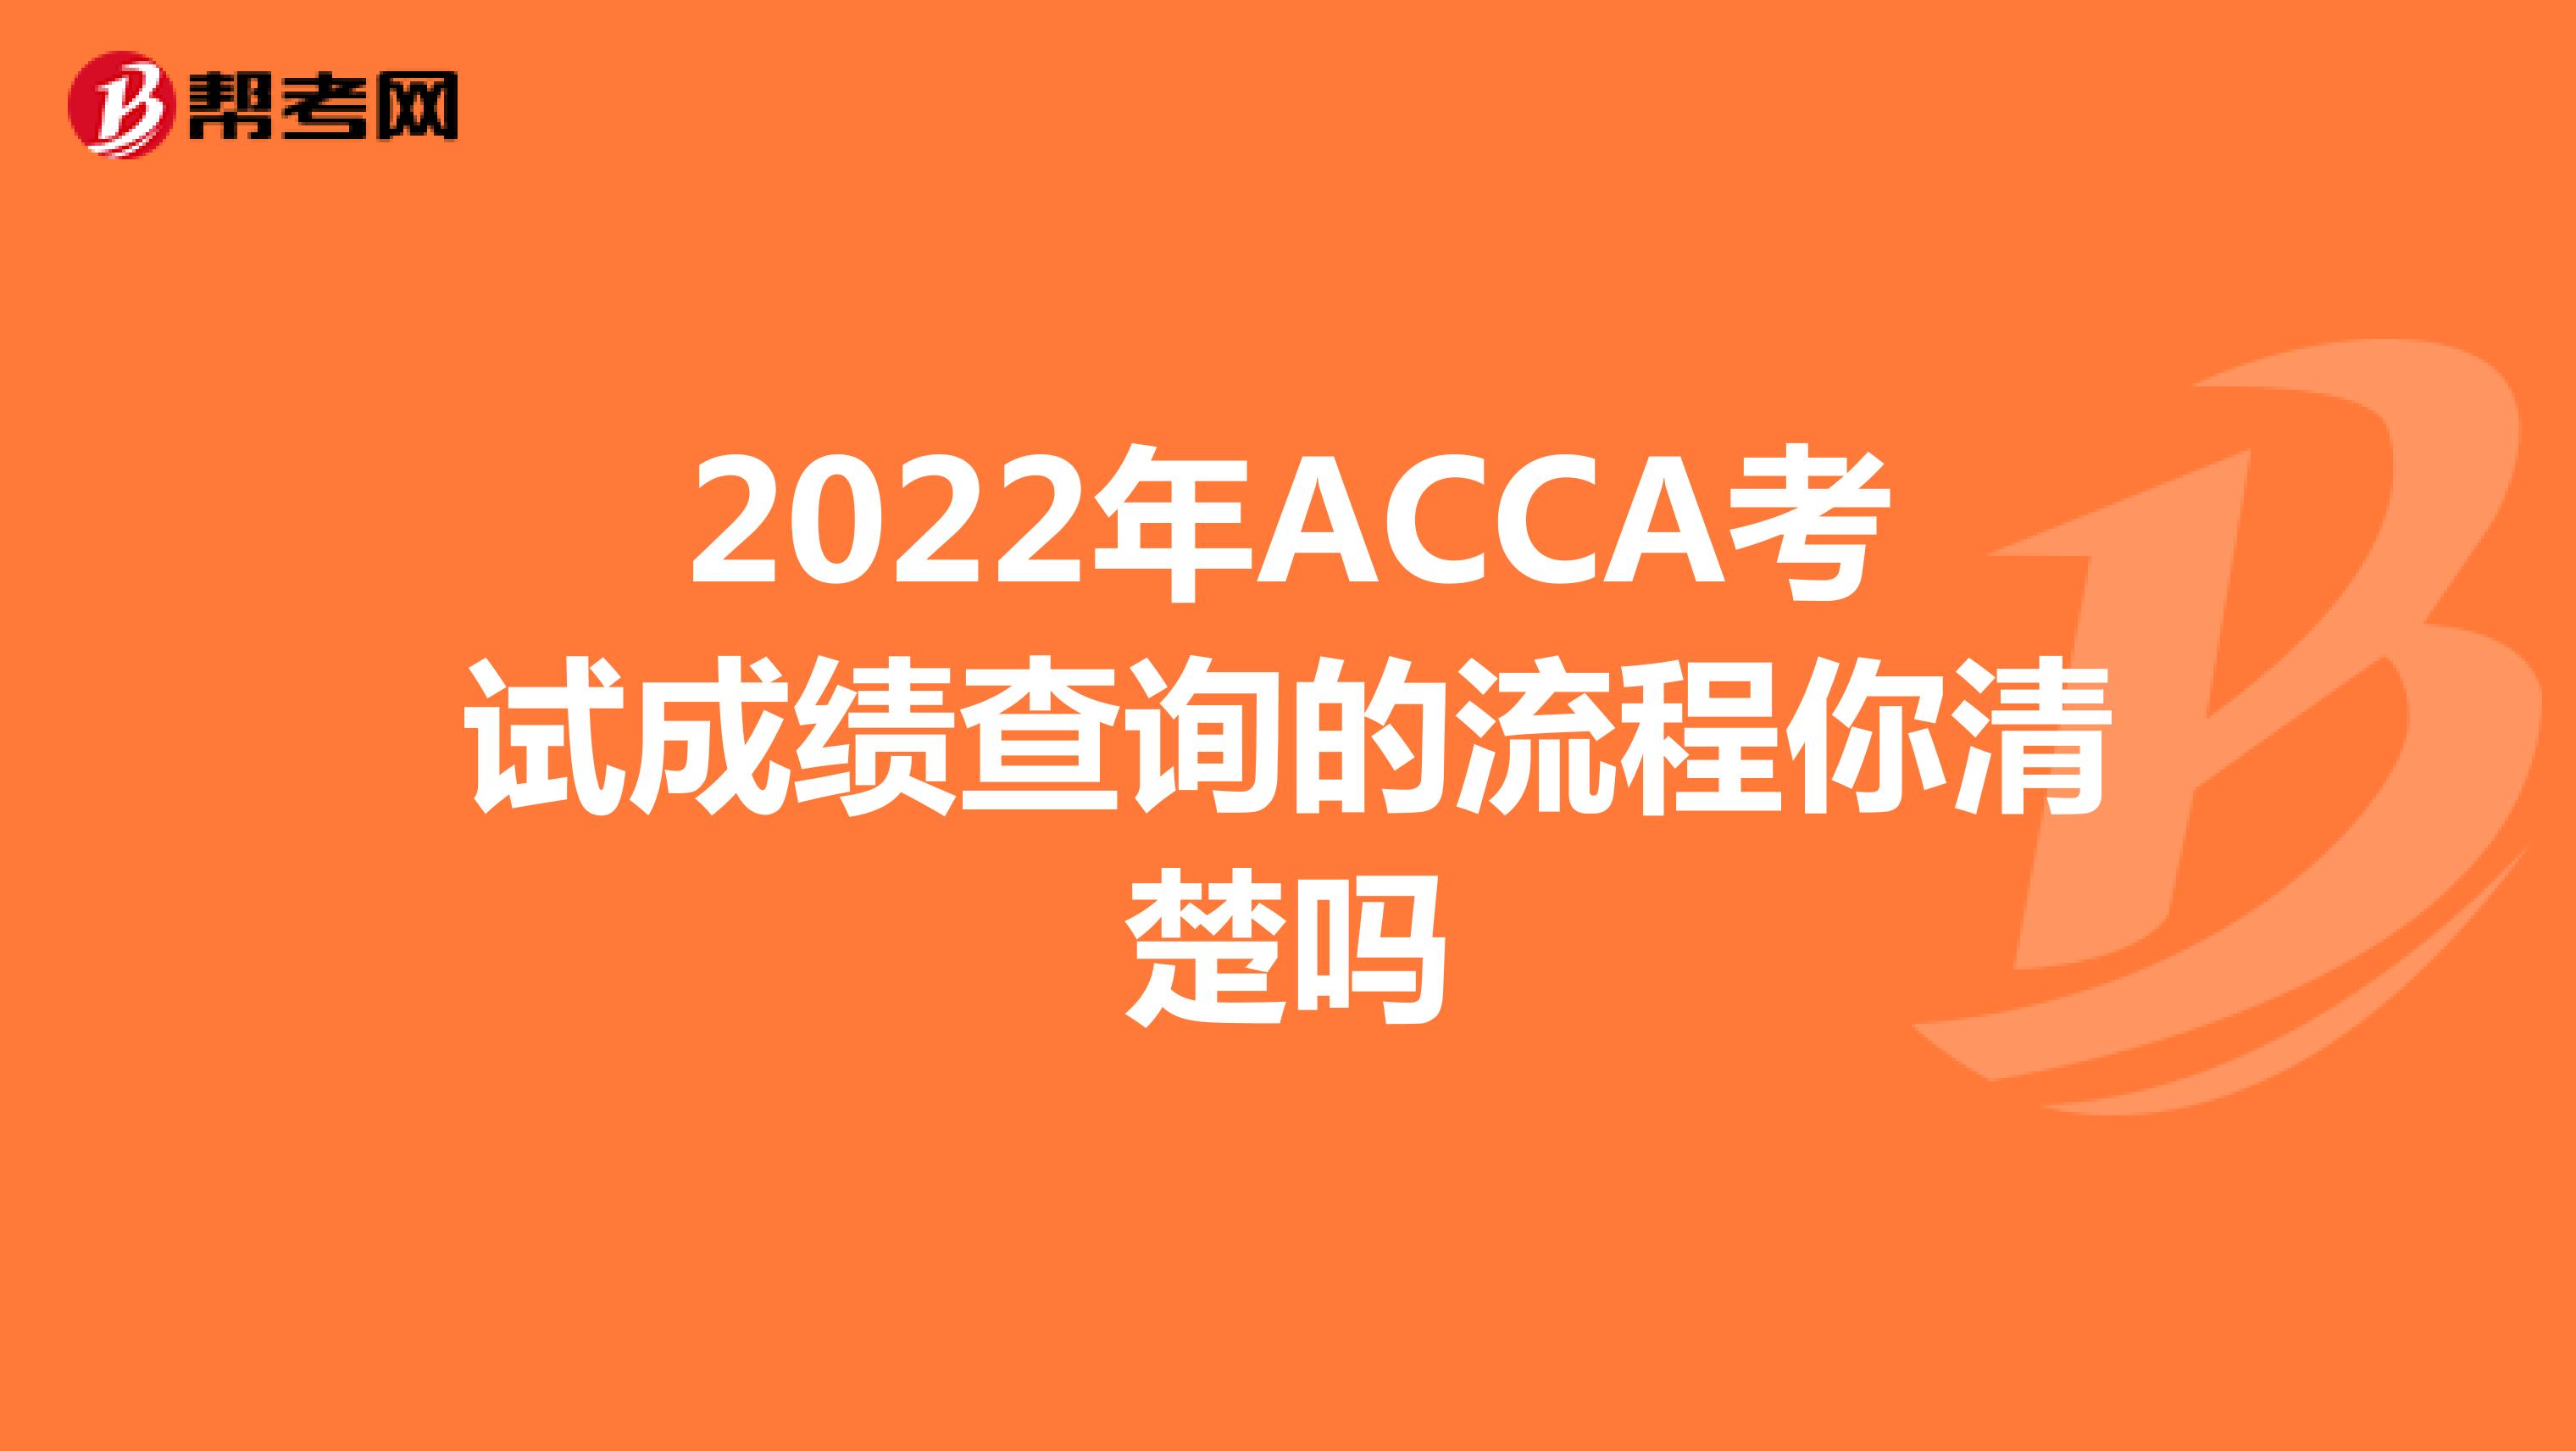 2022年ACCA考试成绩查询的流程你清楚吗